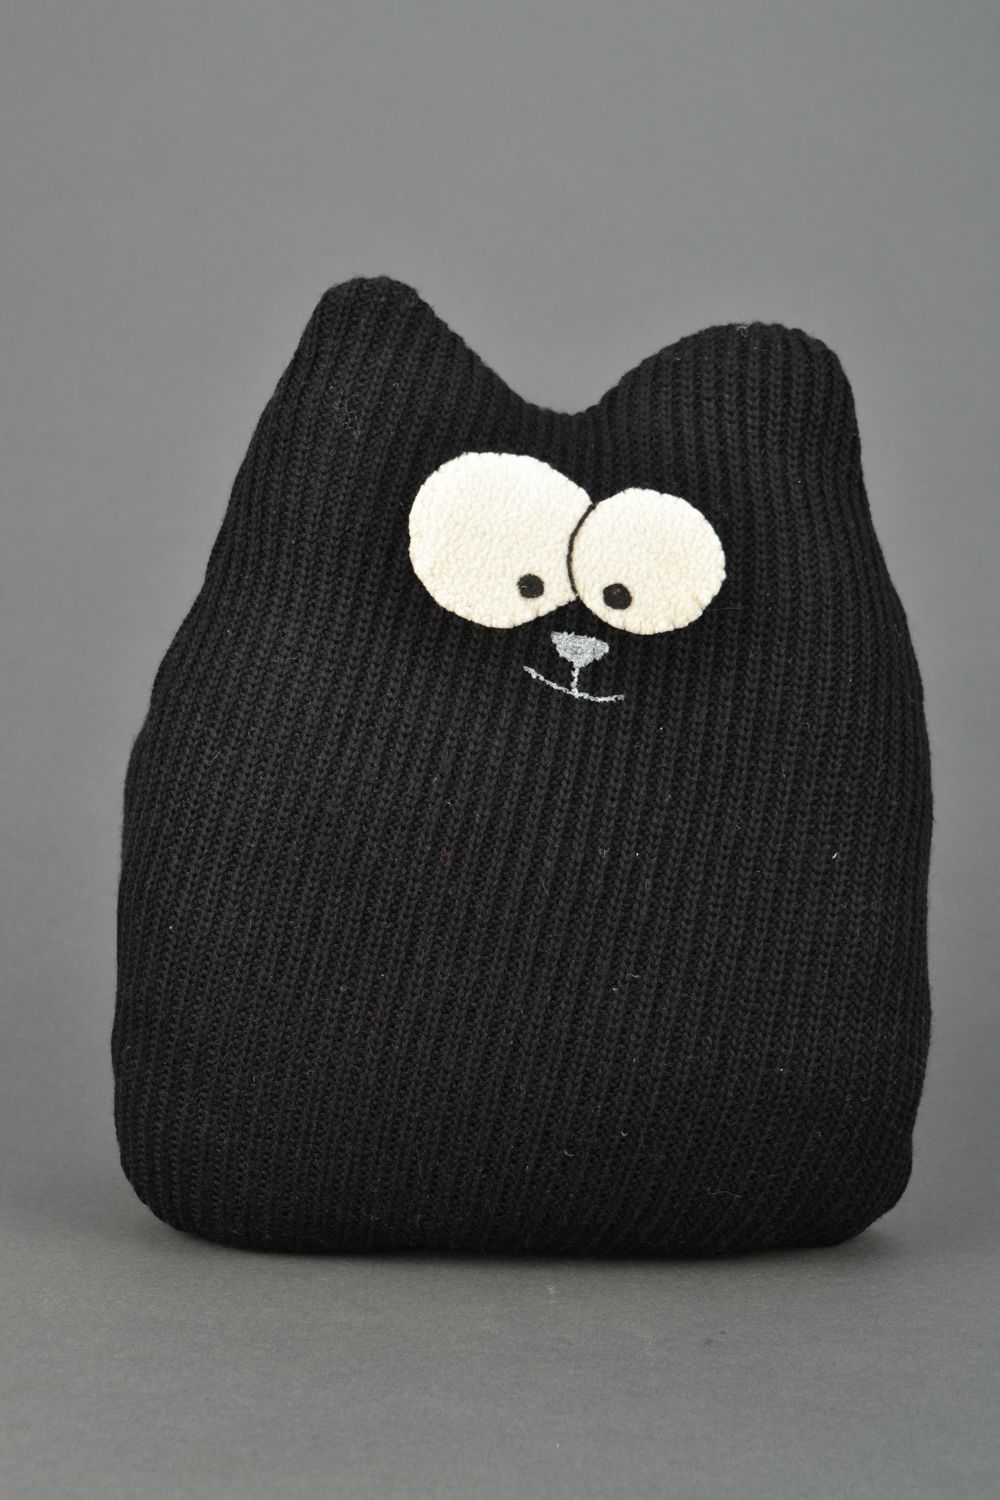 Кот подушка игрушка черный из ткани  фото 1